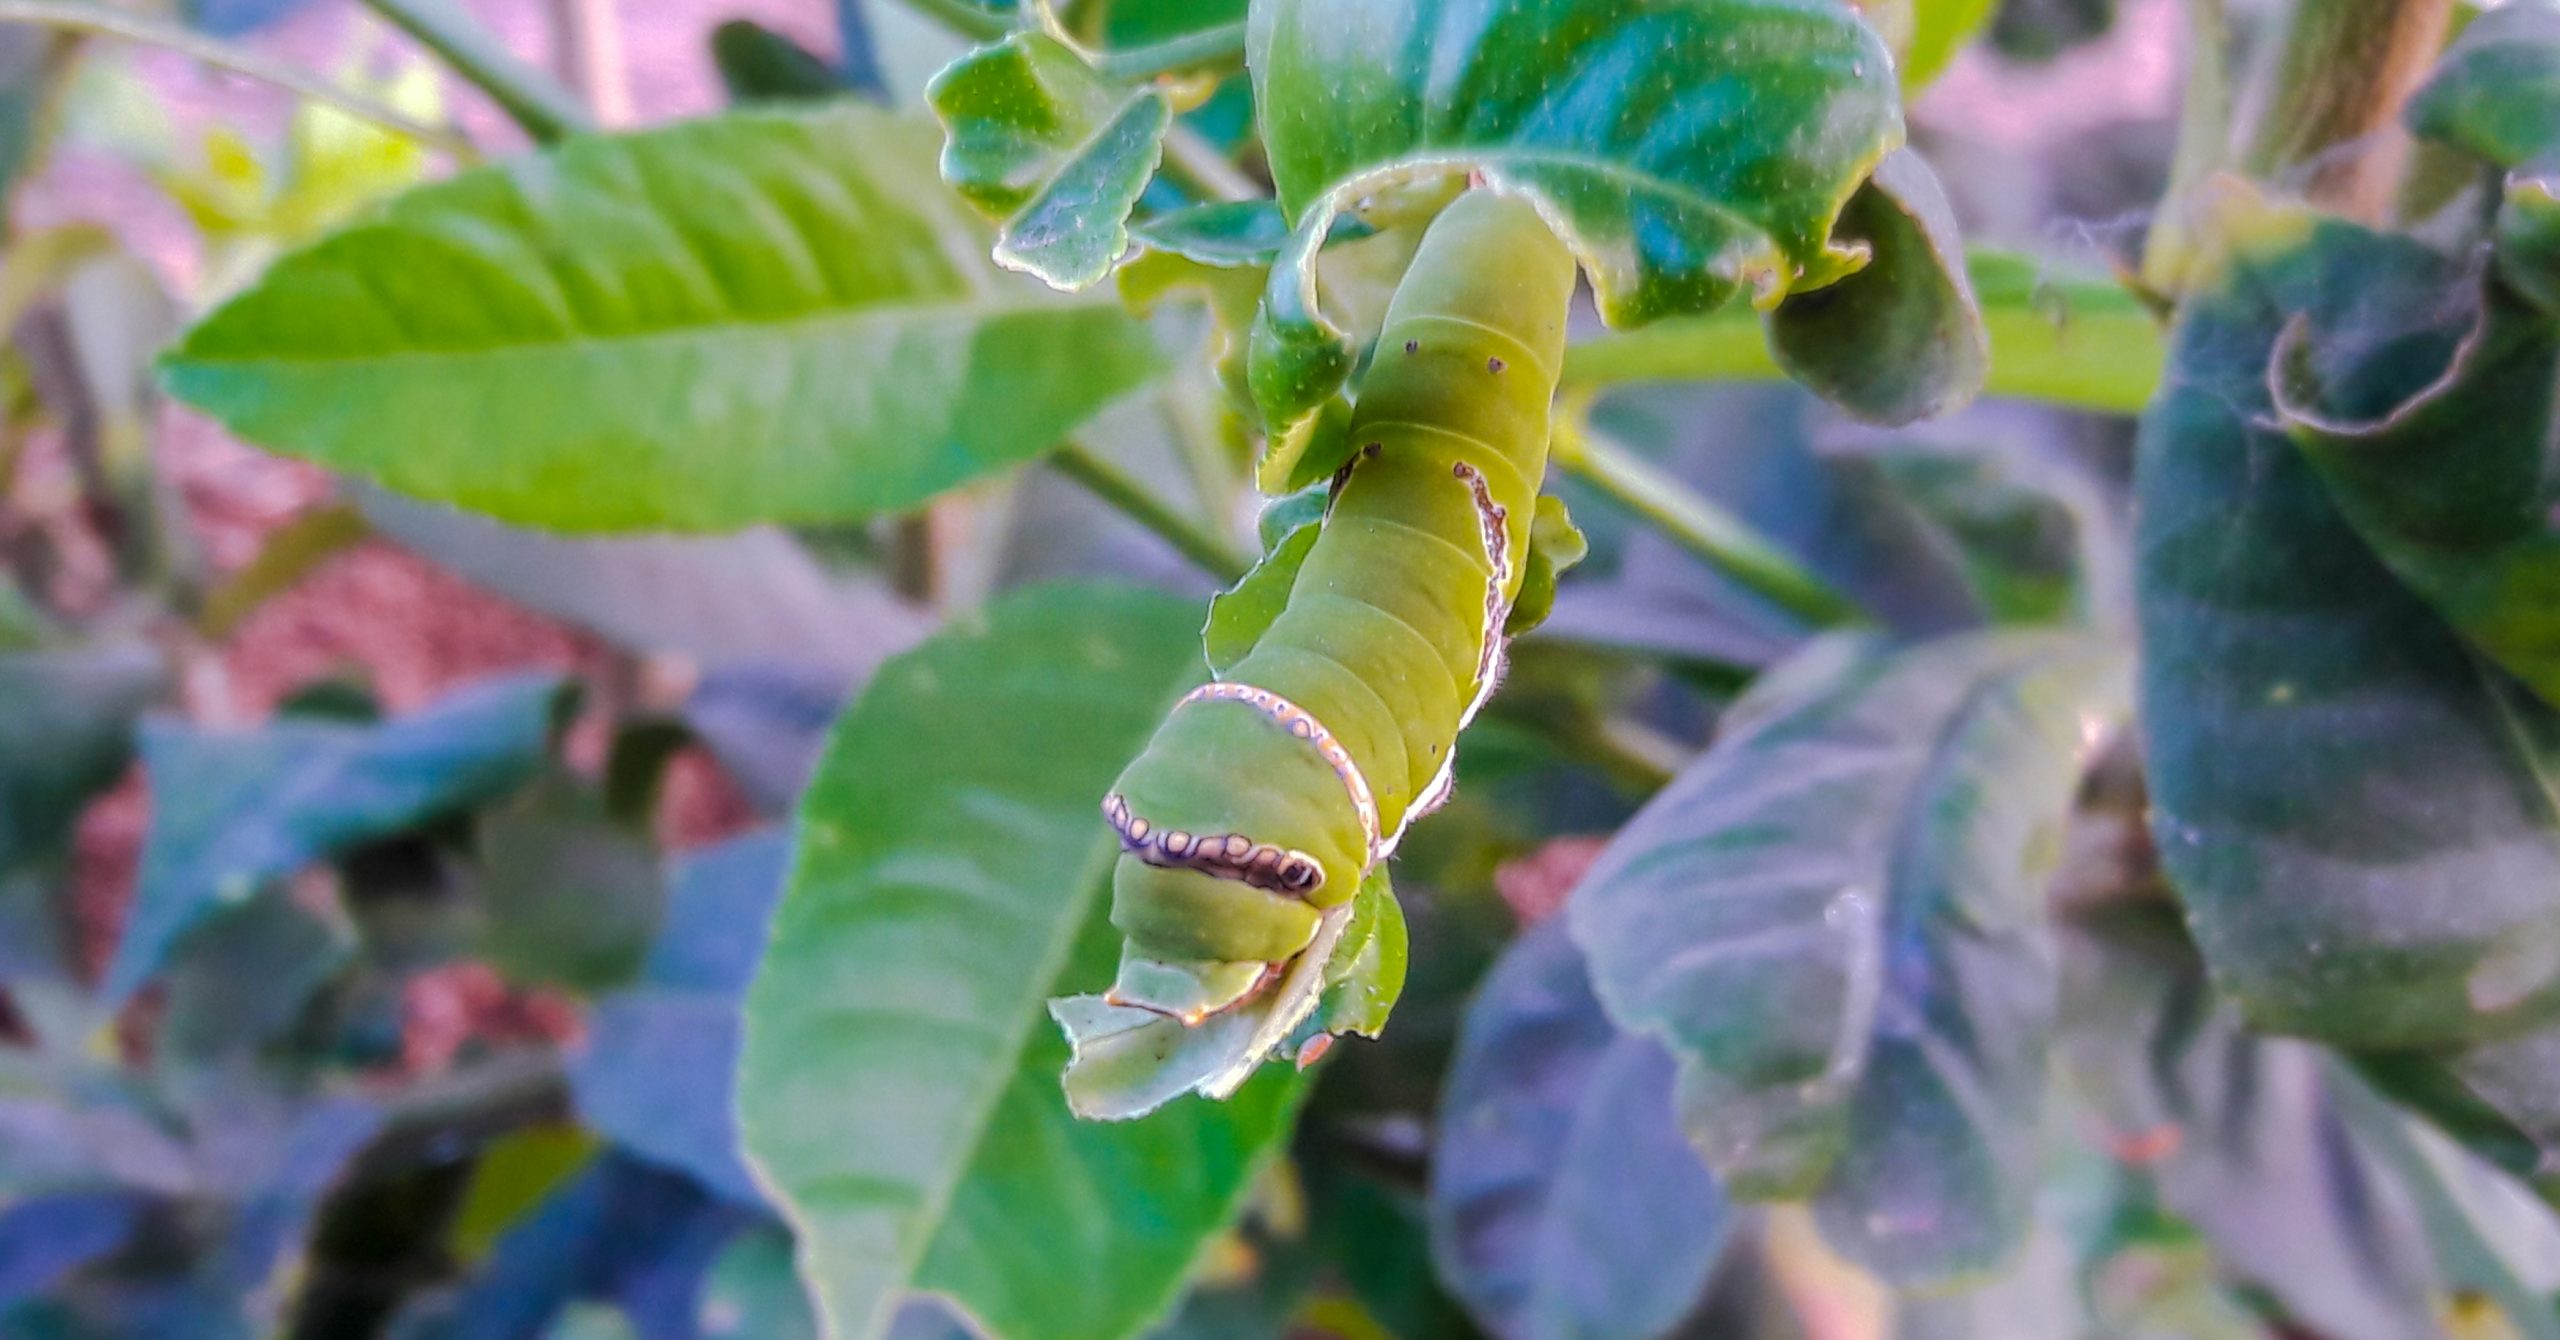 Caterpillars larva on a leaf